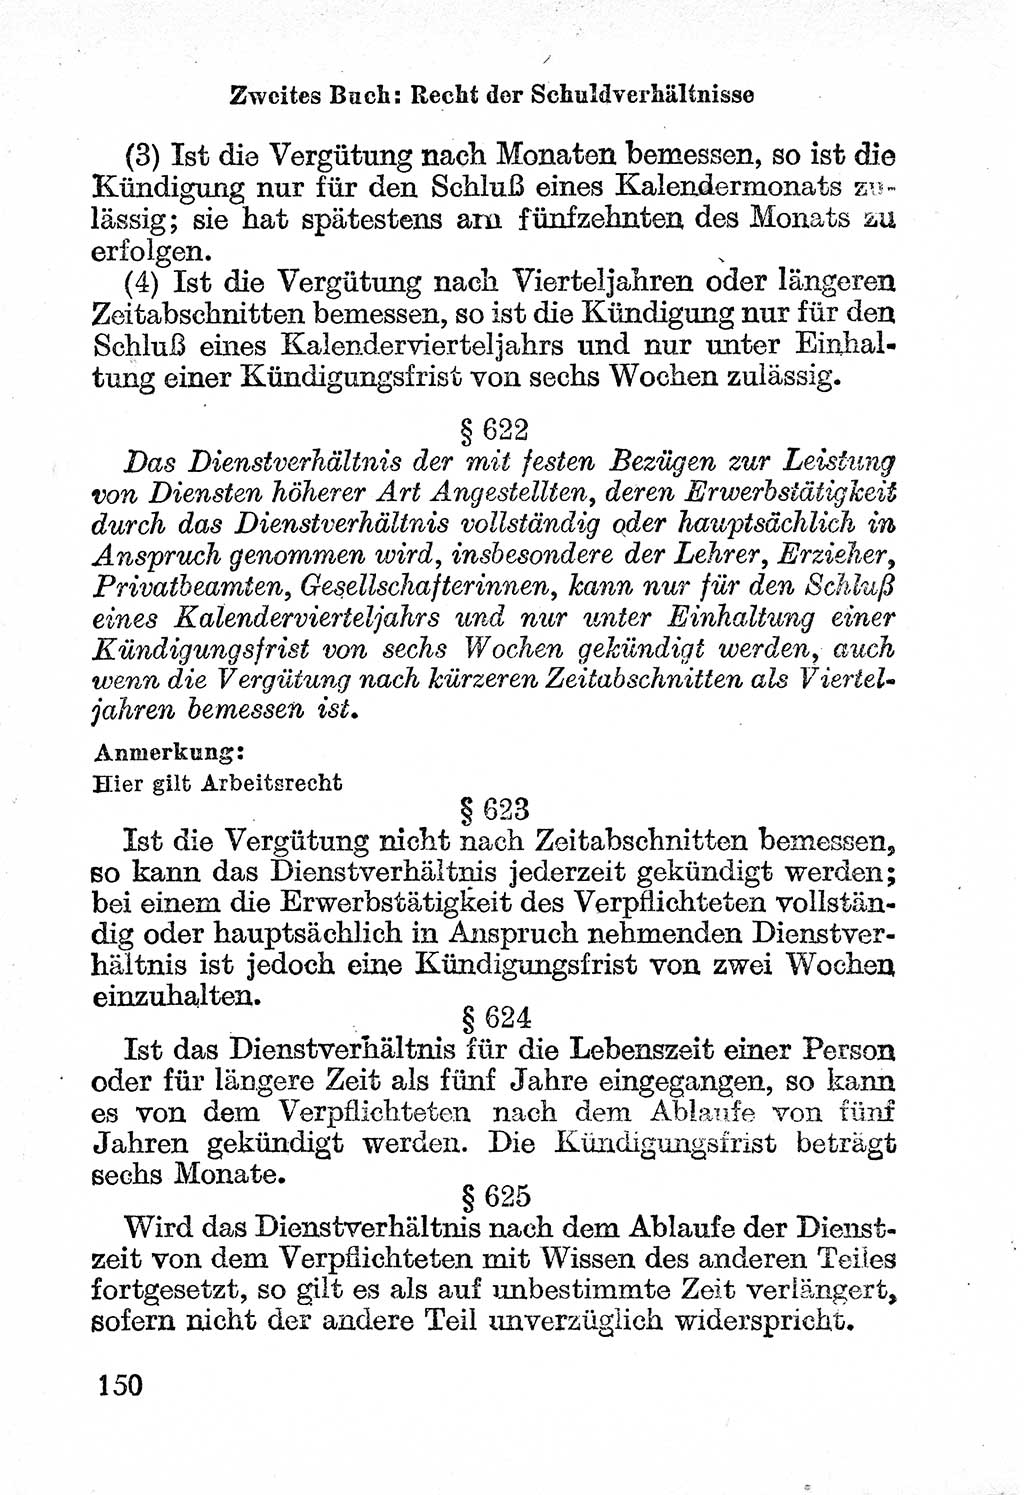 Bürgerliches Gesetzbuch (BGB) nebst wichtigen Nebengesetzen [Deutsche Demokratische Republik (DDR)] 1956, Seite 150 (BGB Nebenges. DDR 1956, S. 150)